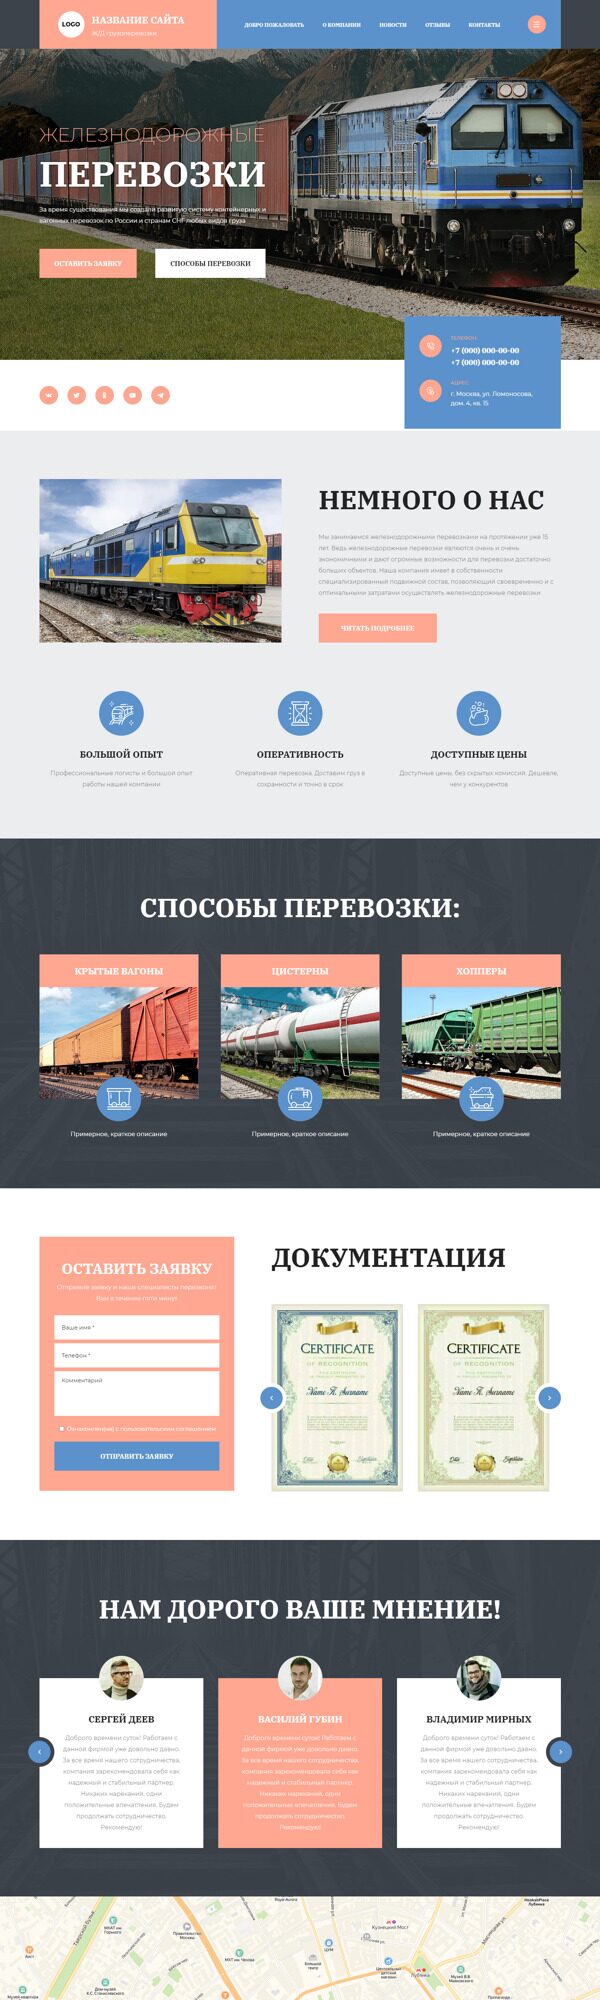 Готовый Сайт-Бизнес № 4210458 - Железнодорожные грузоперевозки (Десктопная версия)